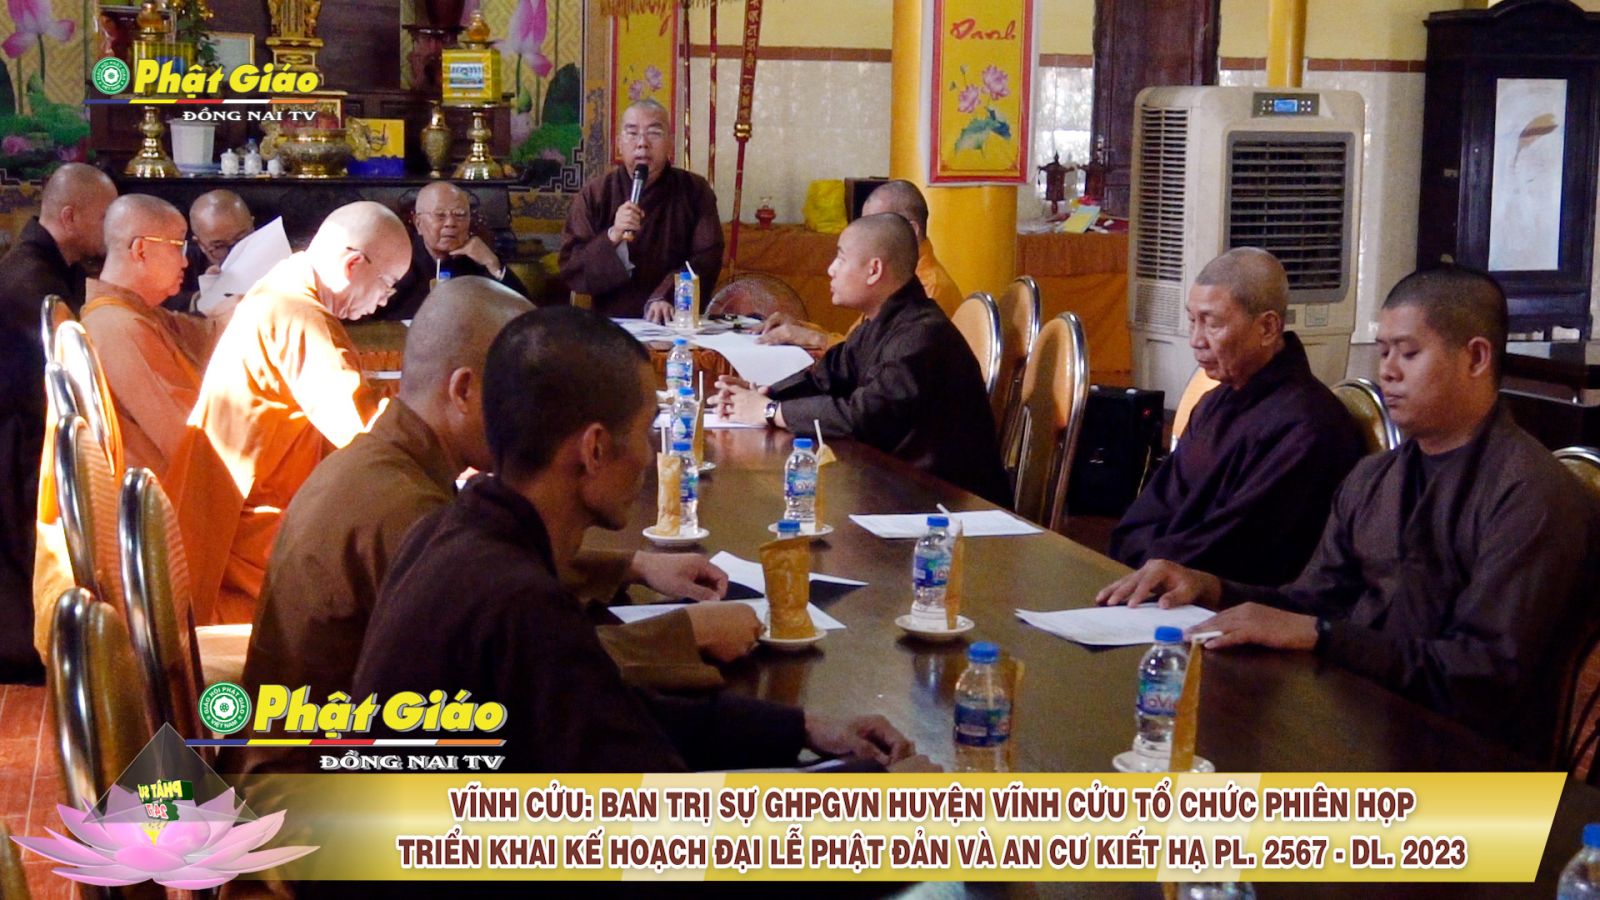 [Video] Vĩnh Cửu: Ban Trị sự GHPGVN huyện tổ chức Phiên họp triển khai kế hoạch Đại lễ Phật đản và An cư Kiết hạ PL. 2567 - DL. 2023